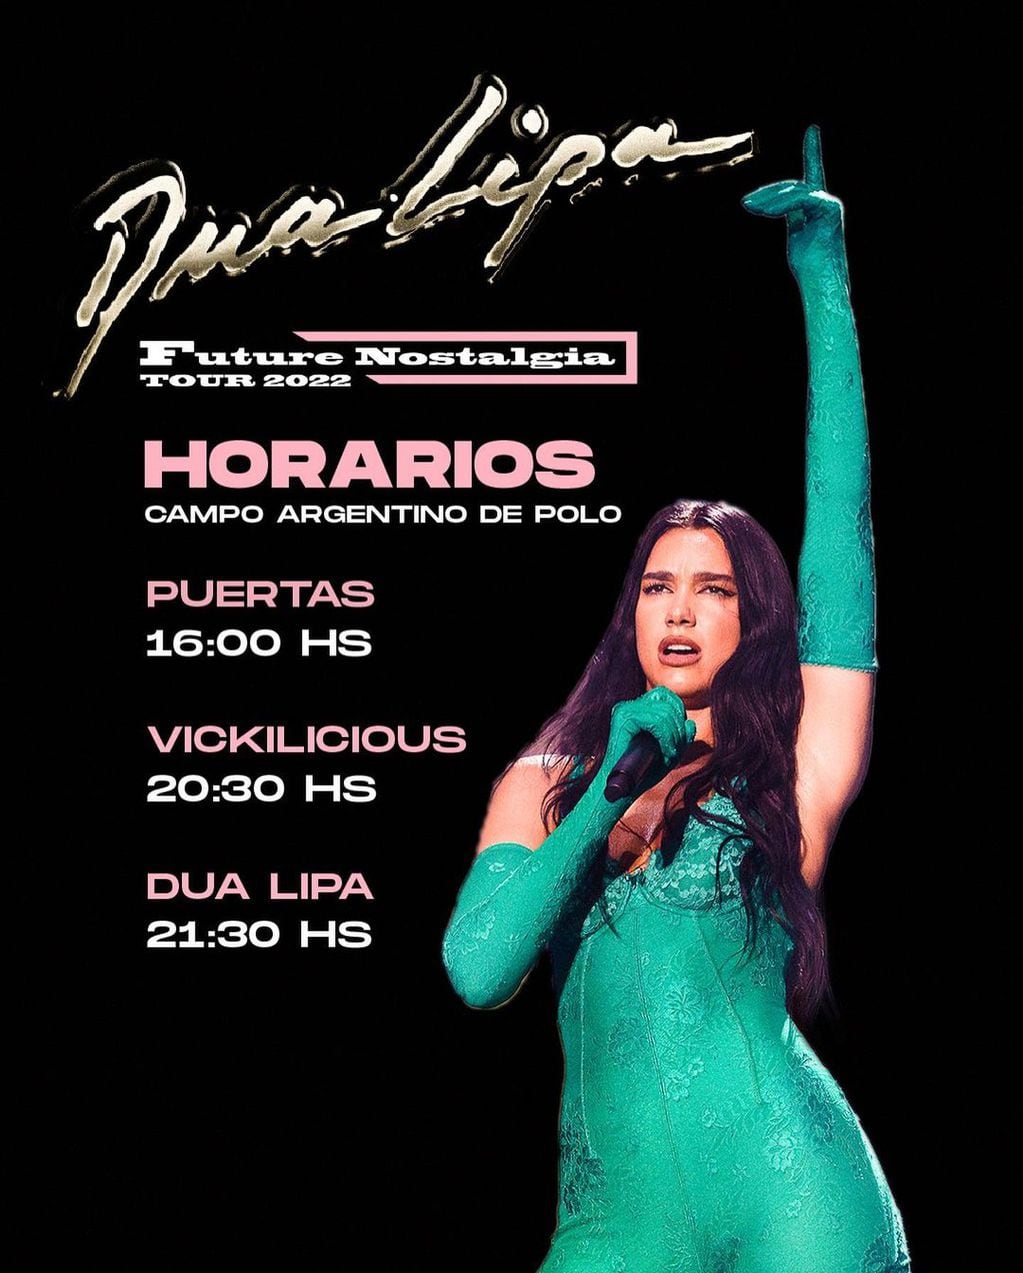 Los horarios del concierto de Dua Lipa en Buenos AiresIn